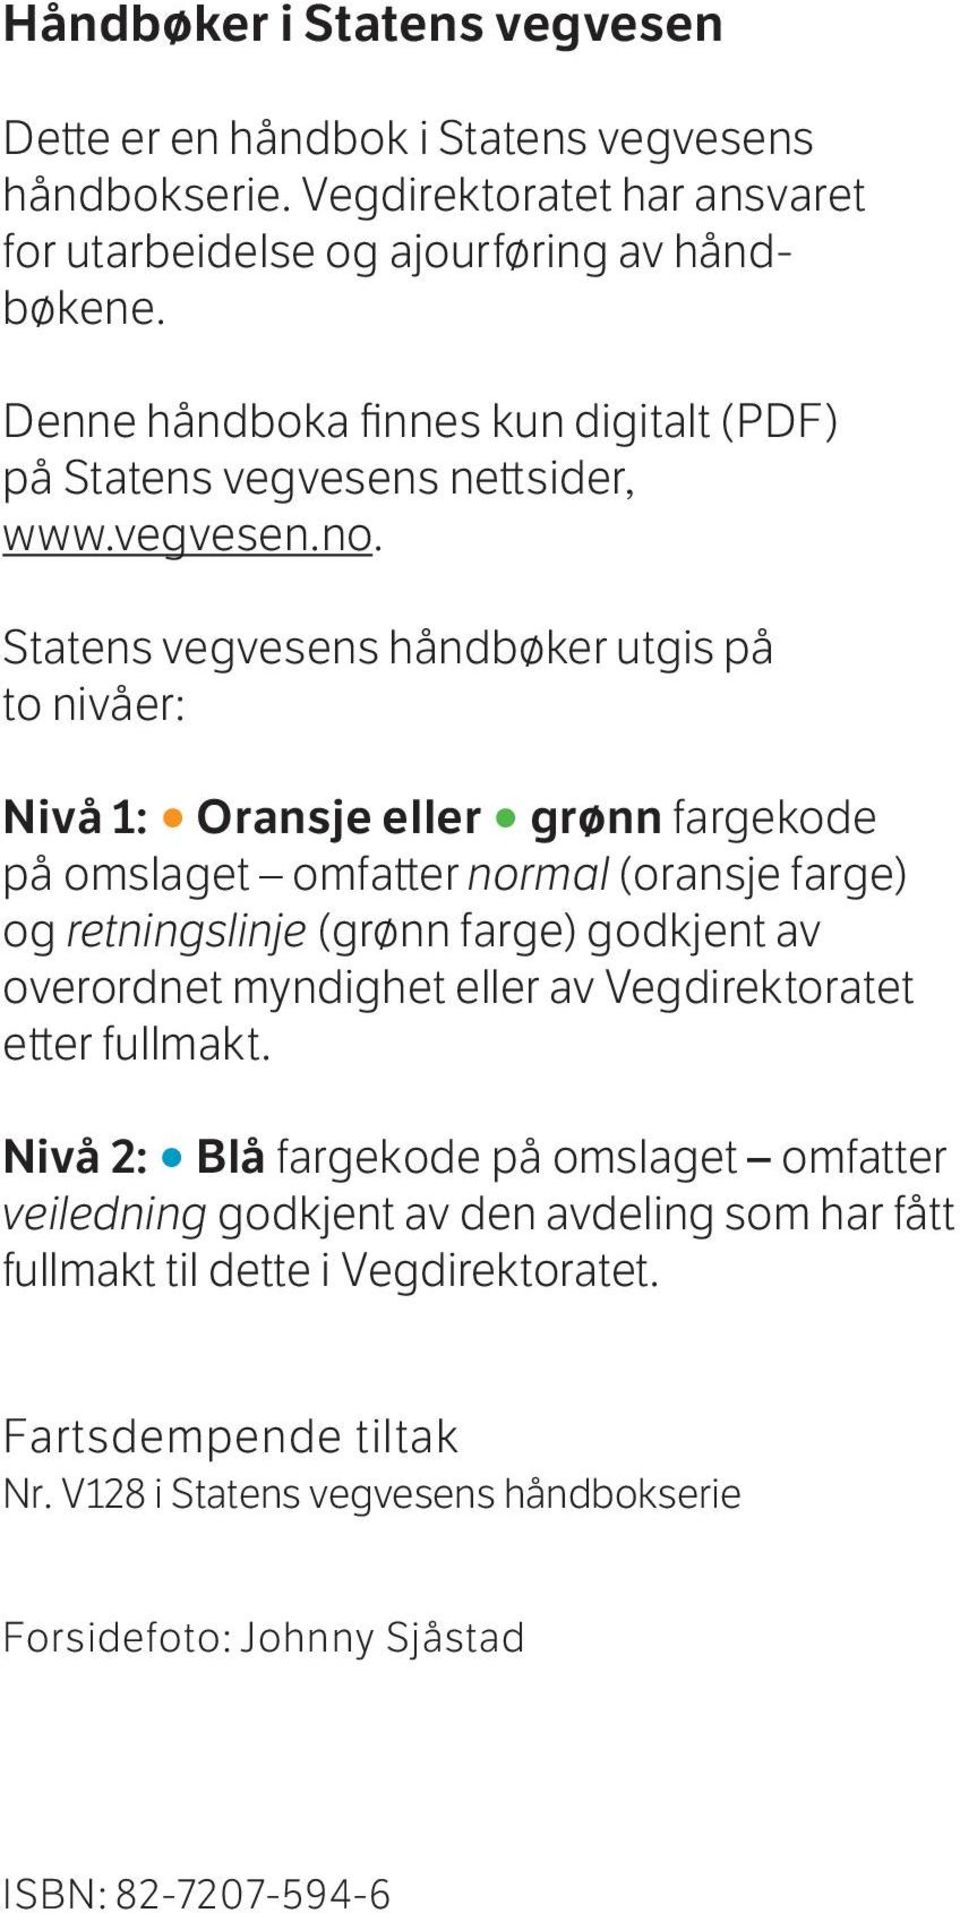 Statens vegvesens håndbøker utgis på to nivåer: Nivå 1: Oransje eller grønn fargekode på omslaget omfatter normal (oransje farge) og retningslinje (grønn farge) godkjent av